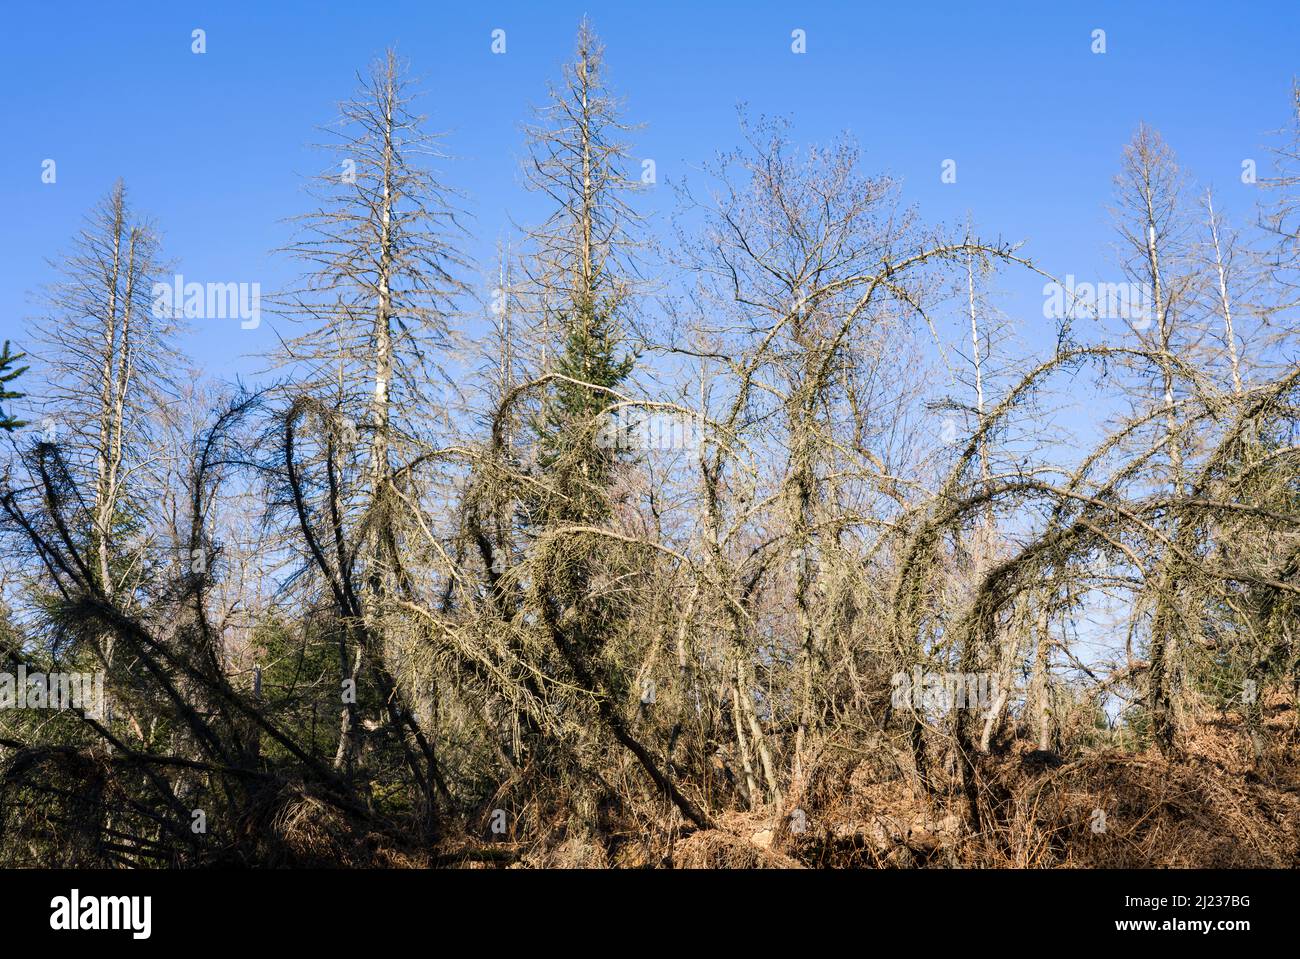 Arbres morts d'épinette (Picea abies), forêt primitive Urwald Sababurg, Hofgeismar, Weser Uplands, Weserbergland, Hesse, Allemagne Banque D'Images